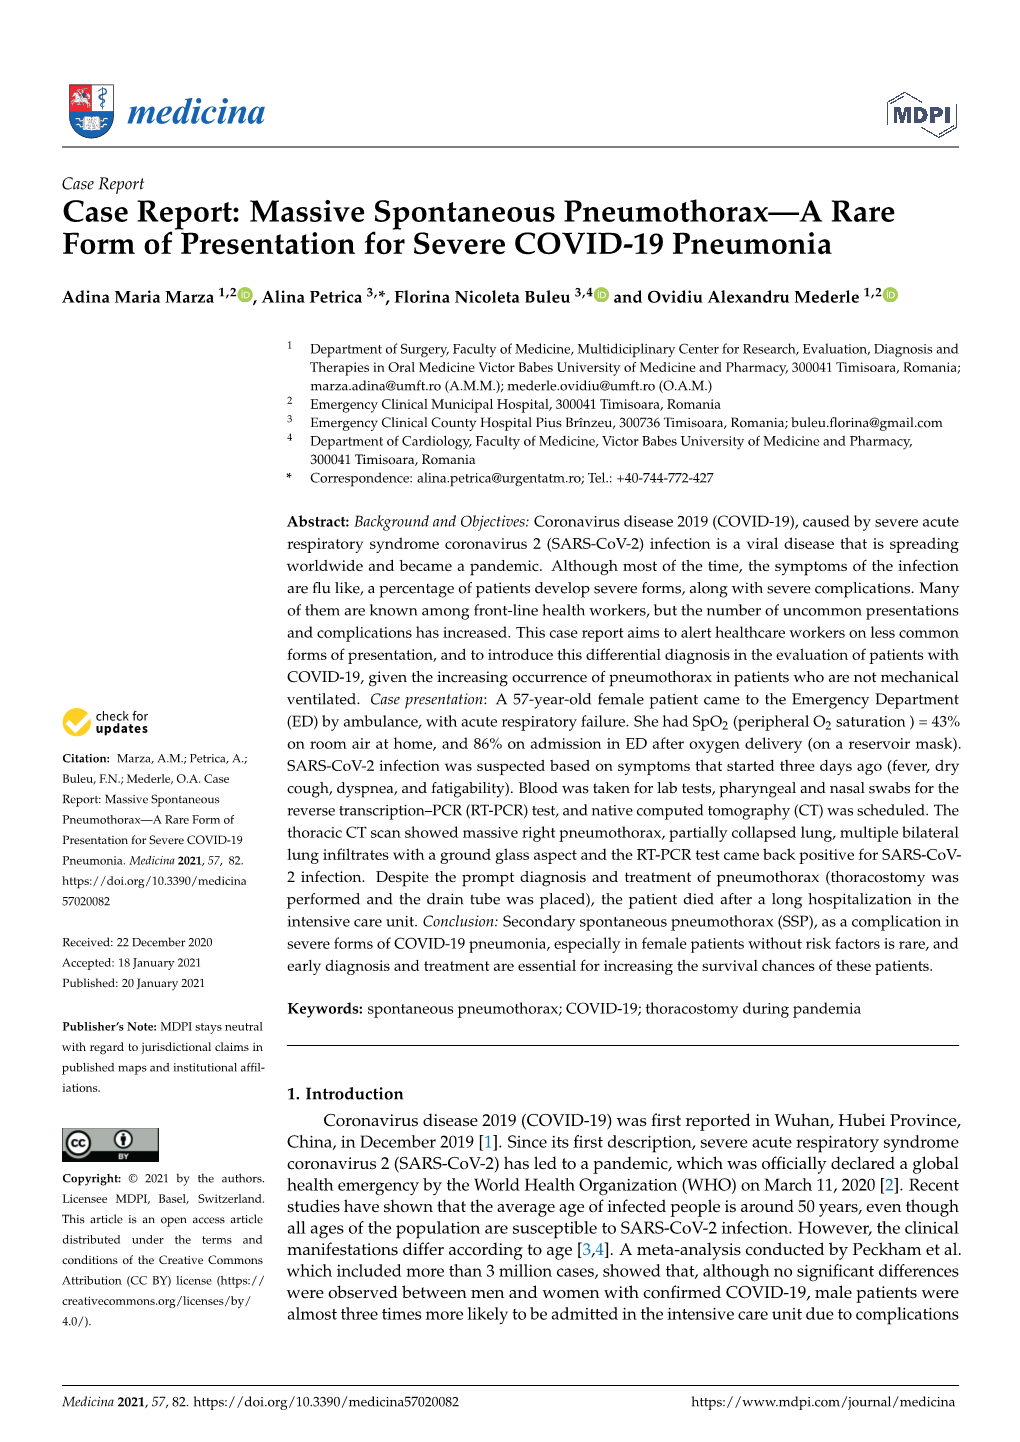 Case Report: Massive Spontaneous Pneumothorax—A Rare Form of Presentation for Severe COVID-19 Pneumonia